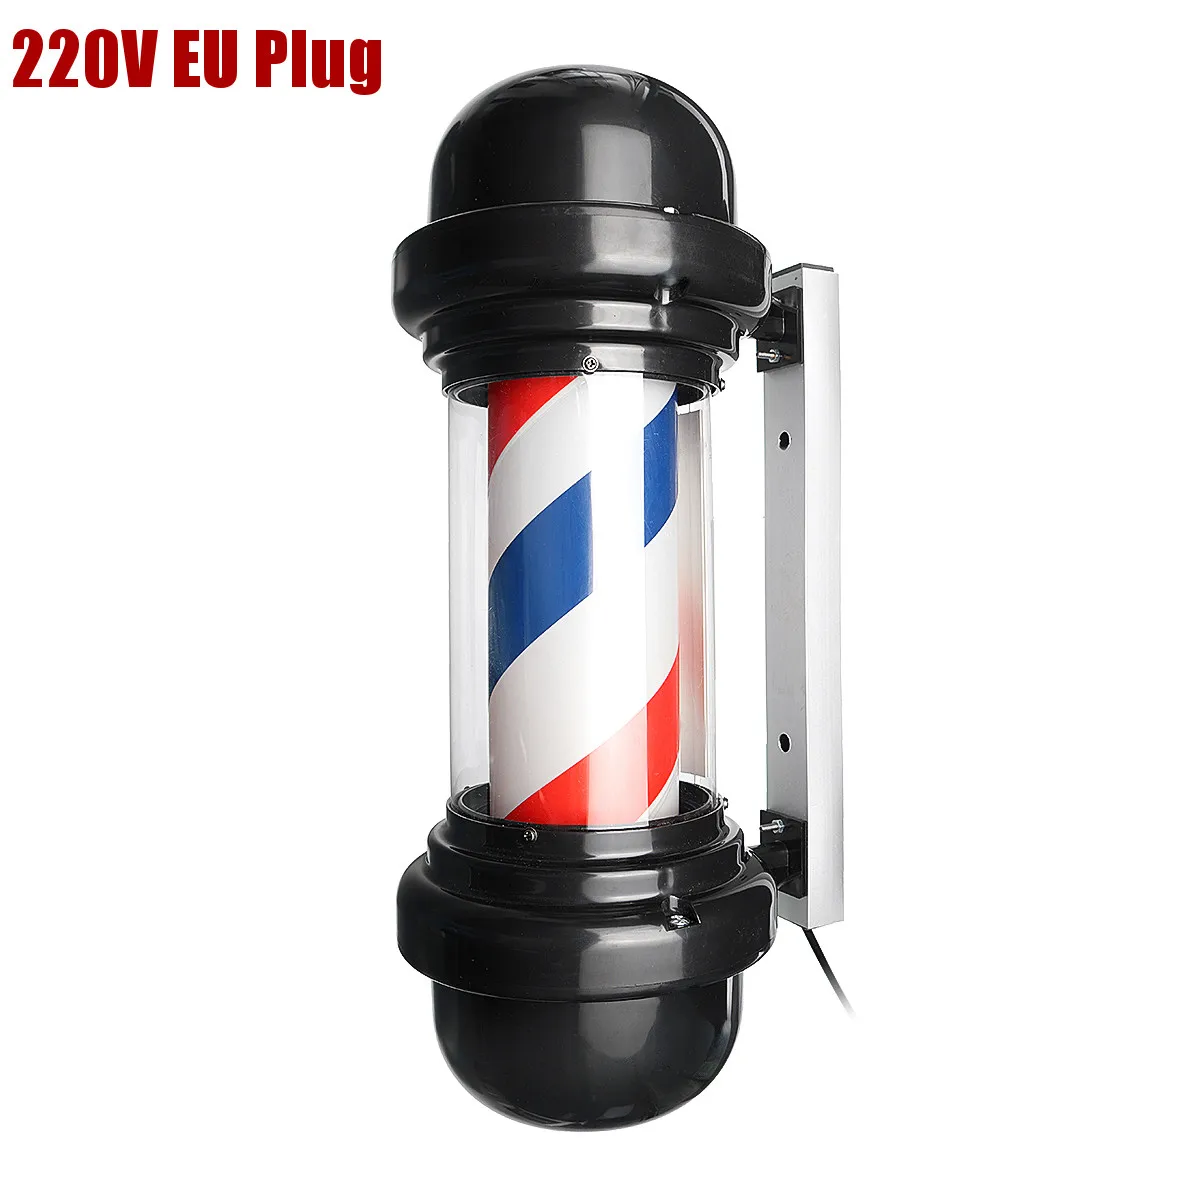 50 см светодиодный светильник для парикмахерской в виде столба, в красную, белую и синюю полоску, настенный подвесной светильник для салона, лампа для салона красоты - Испускаемый цвет: EU Plug